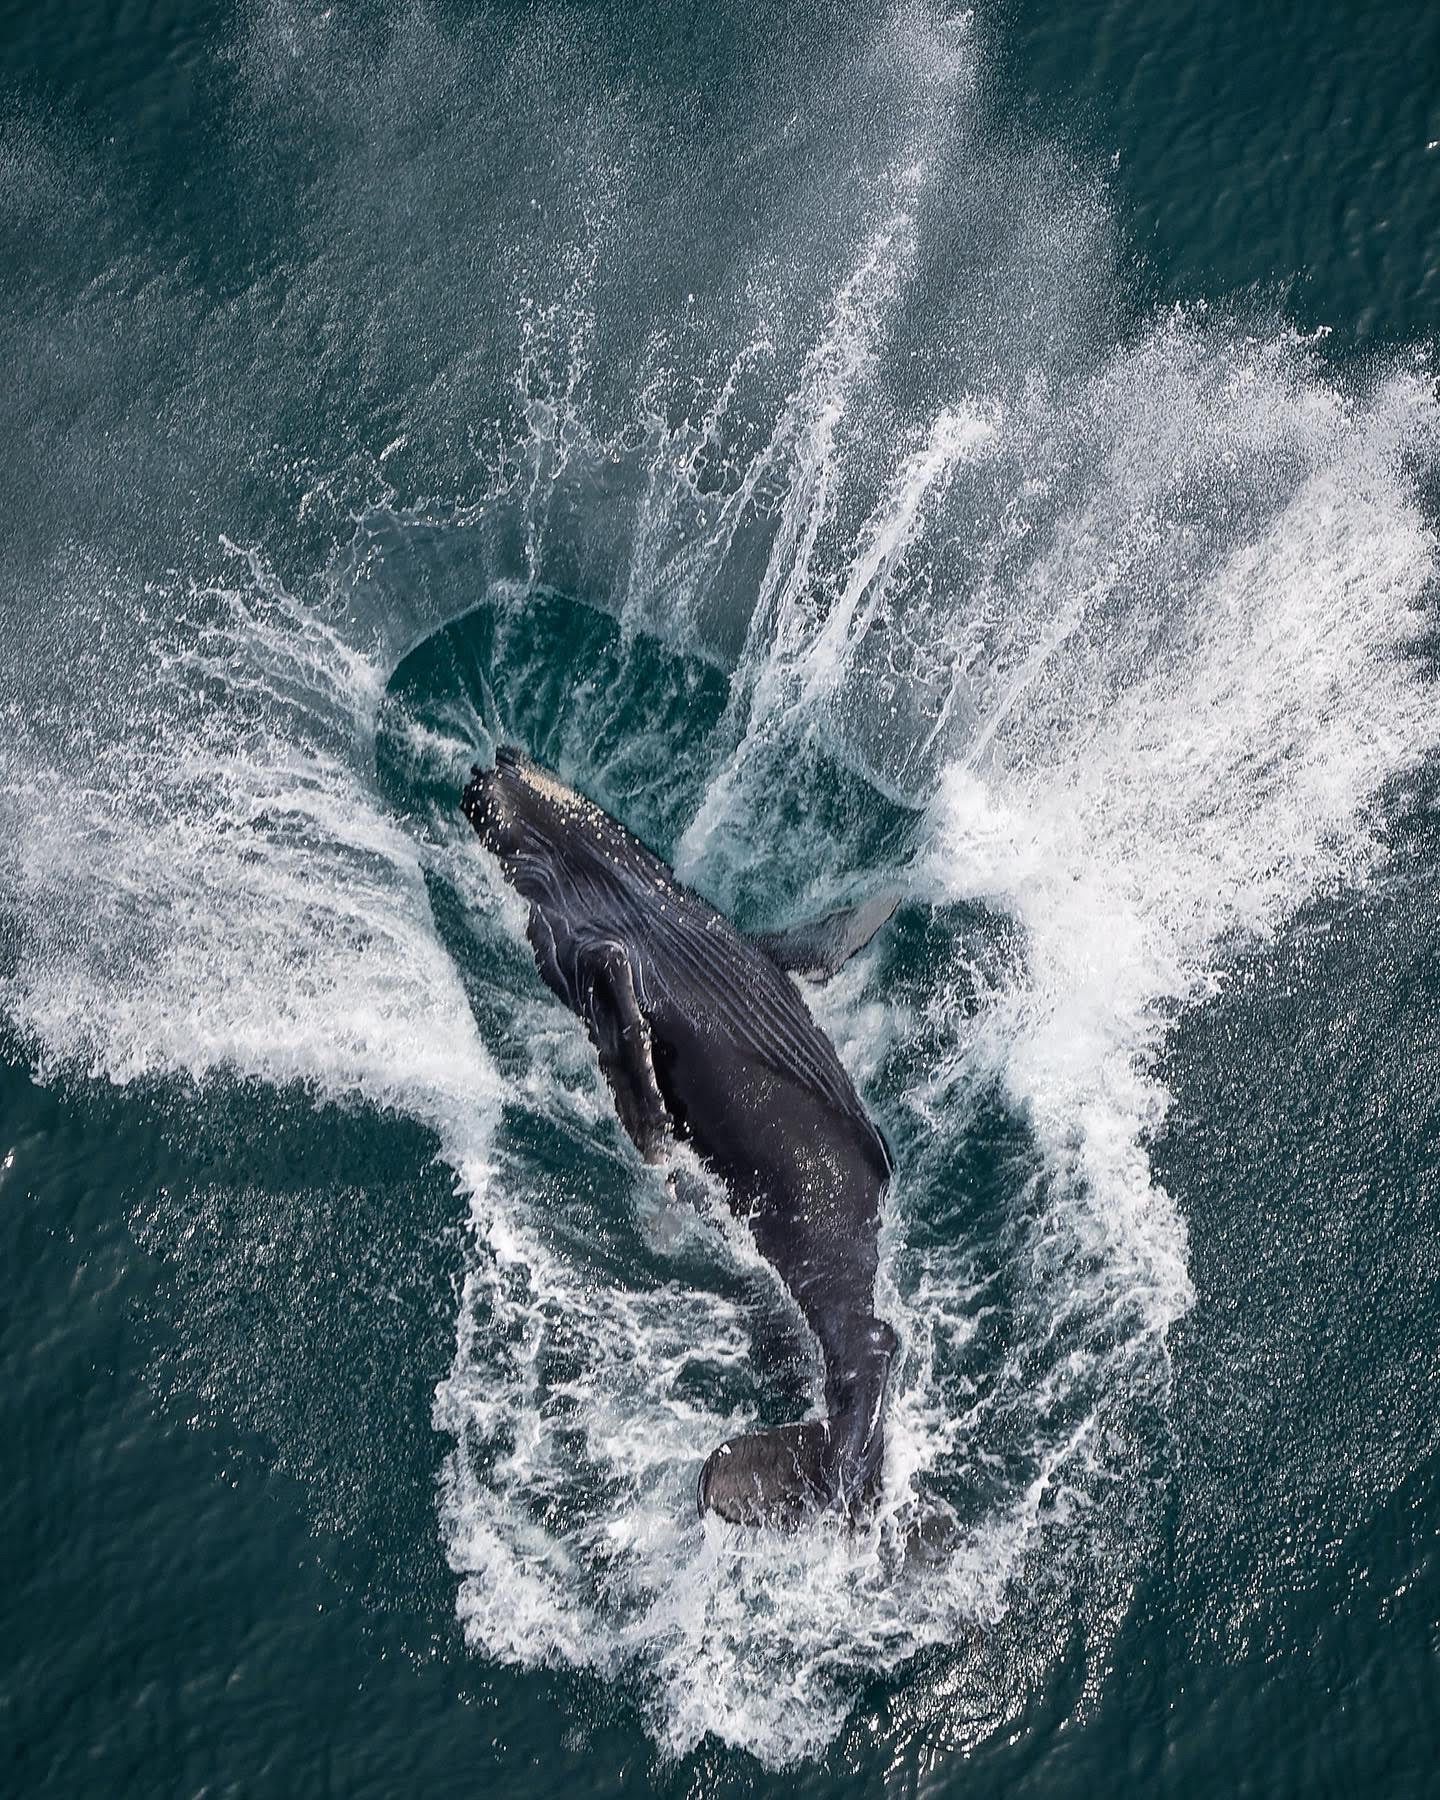 La ballena fue vista cerca de playa Coyote en la península de Nicoya. Foto: Felipe Chávez.